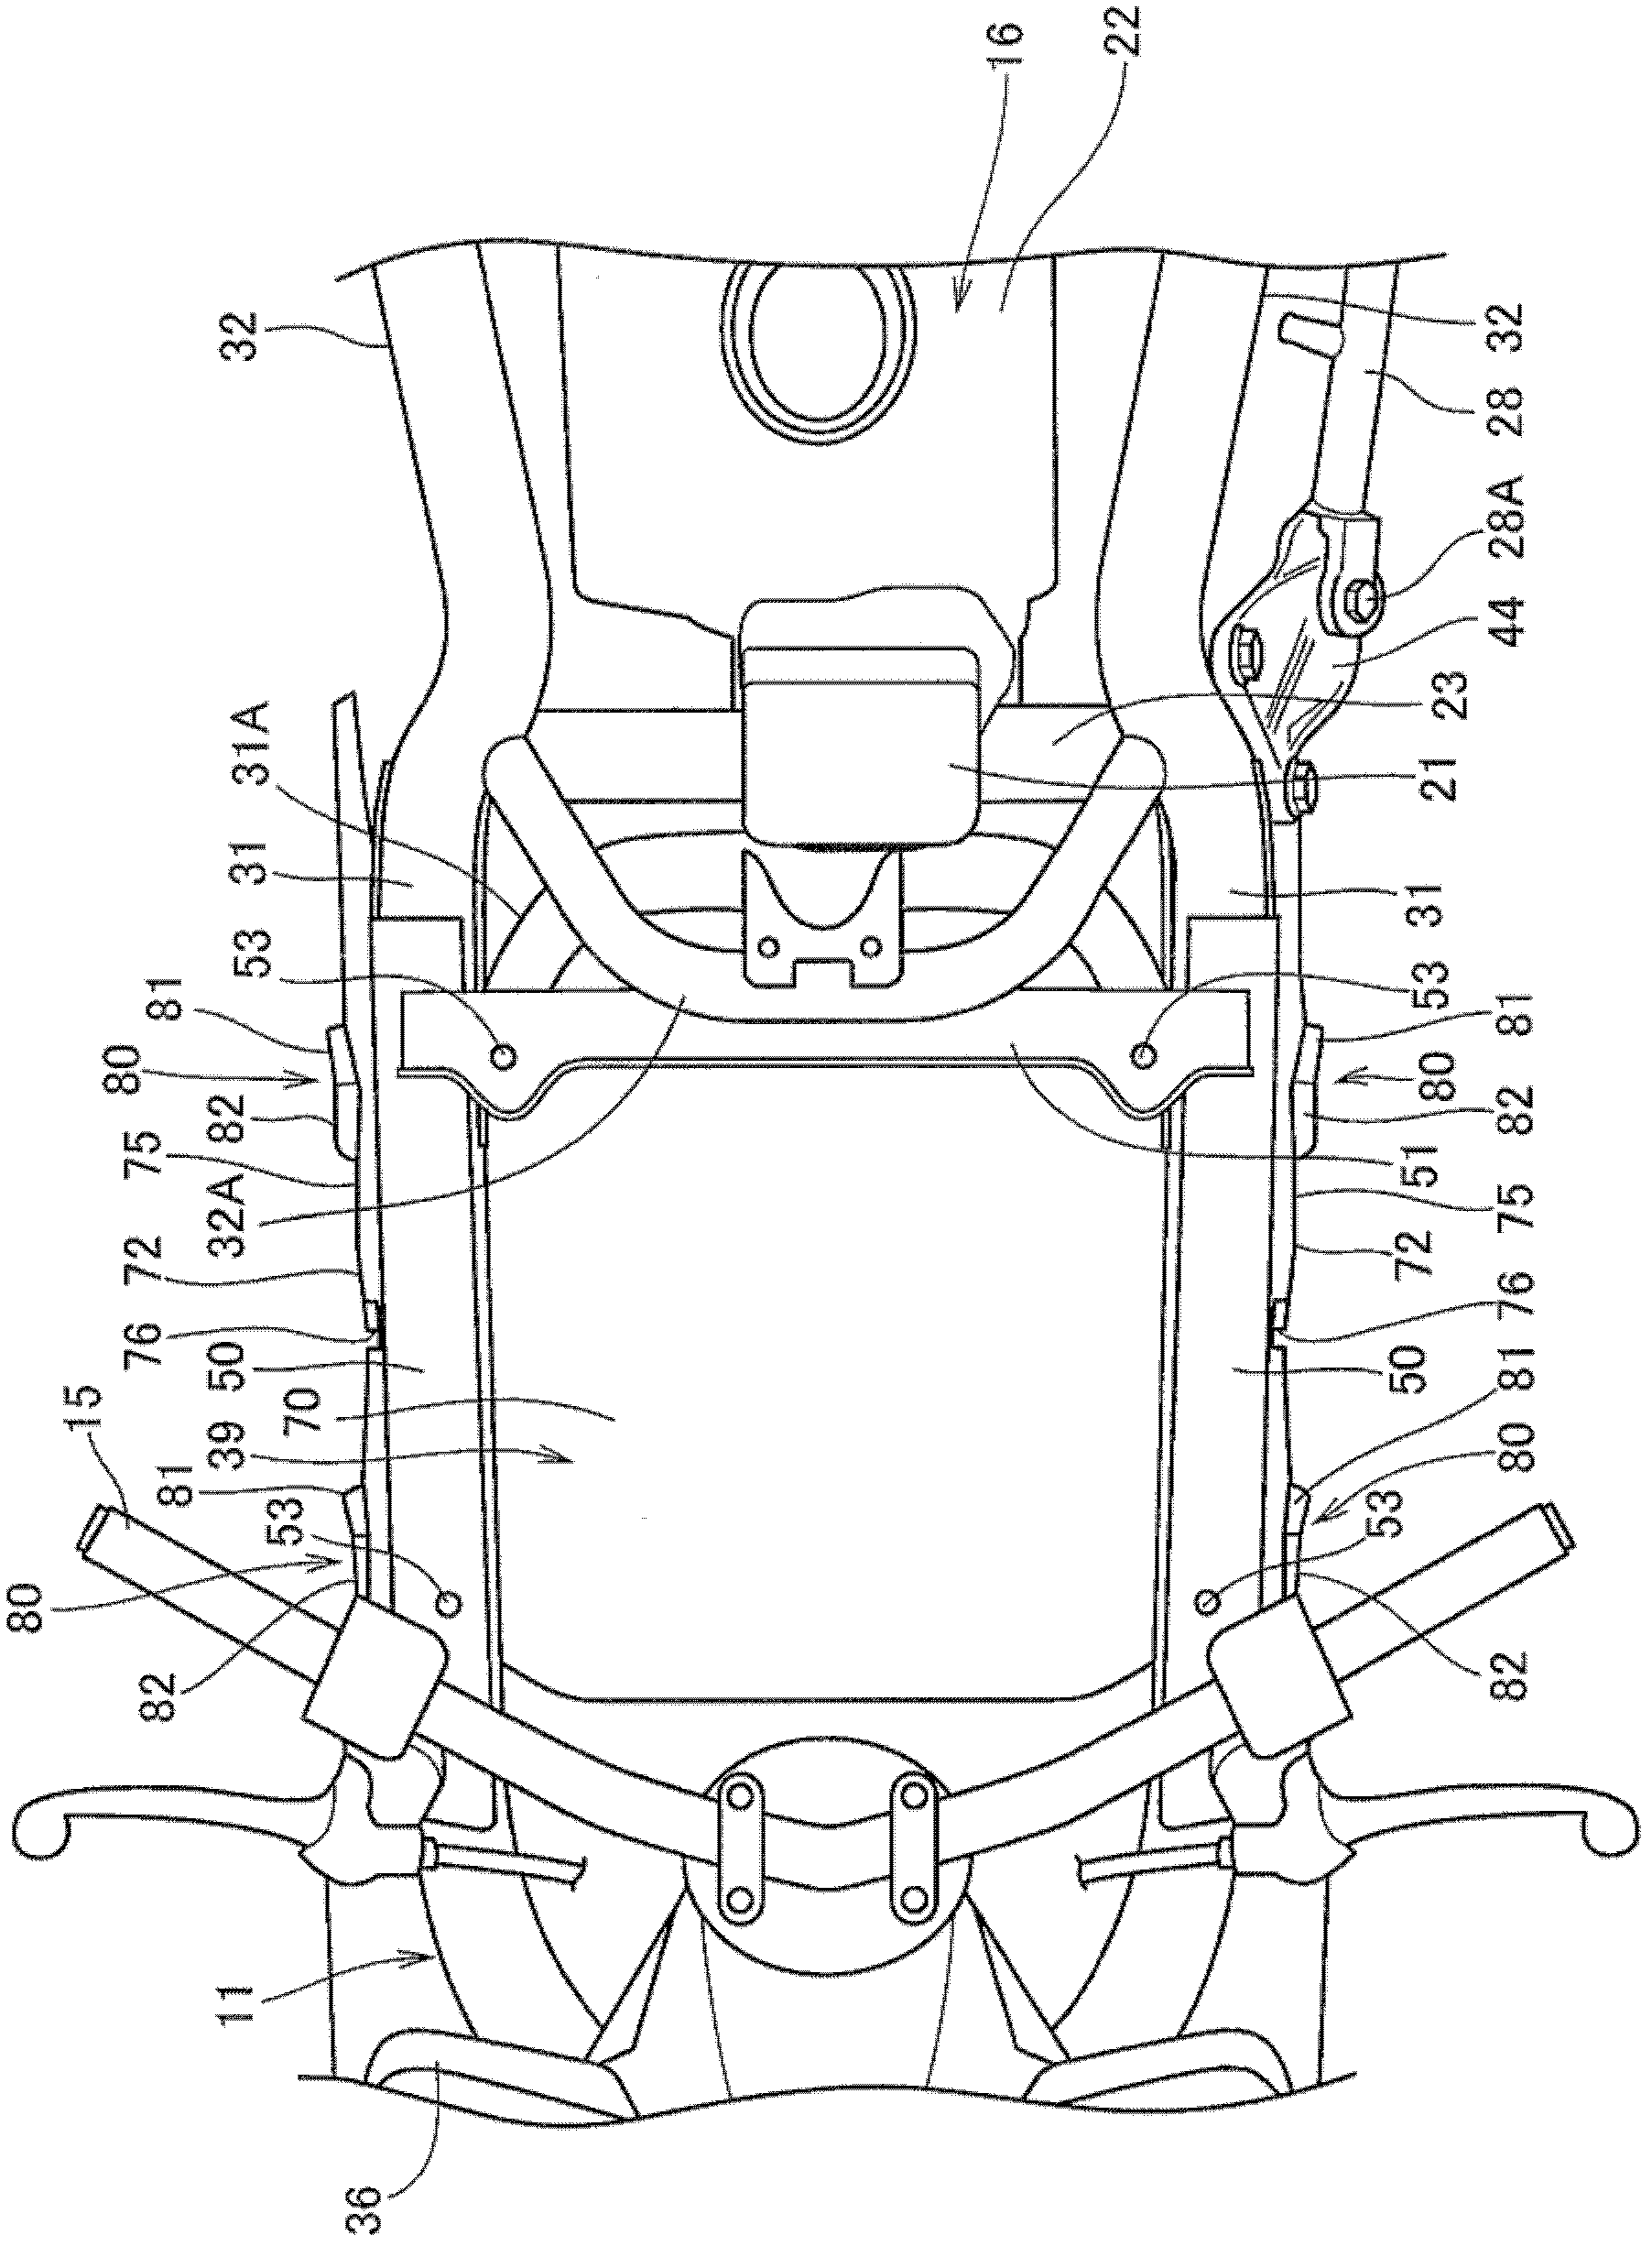 Straddle type vehicle